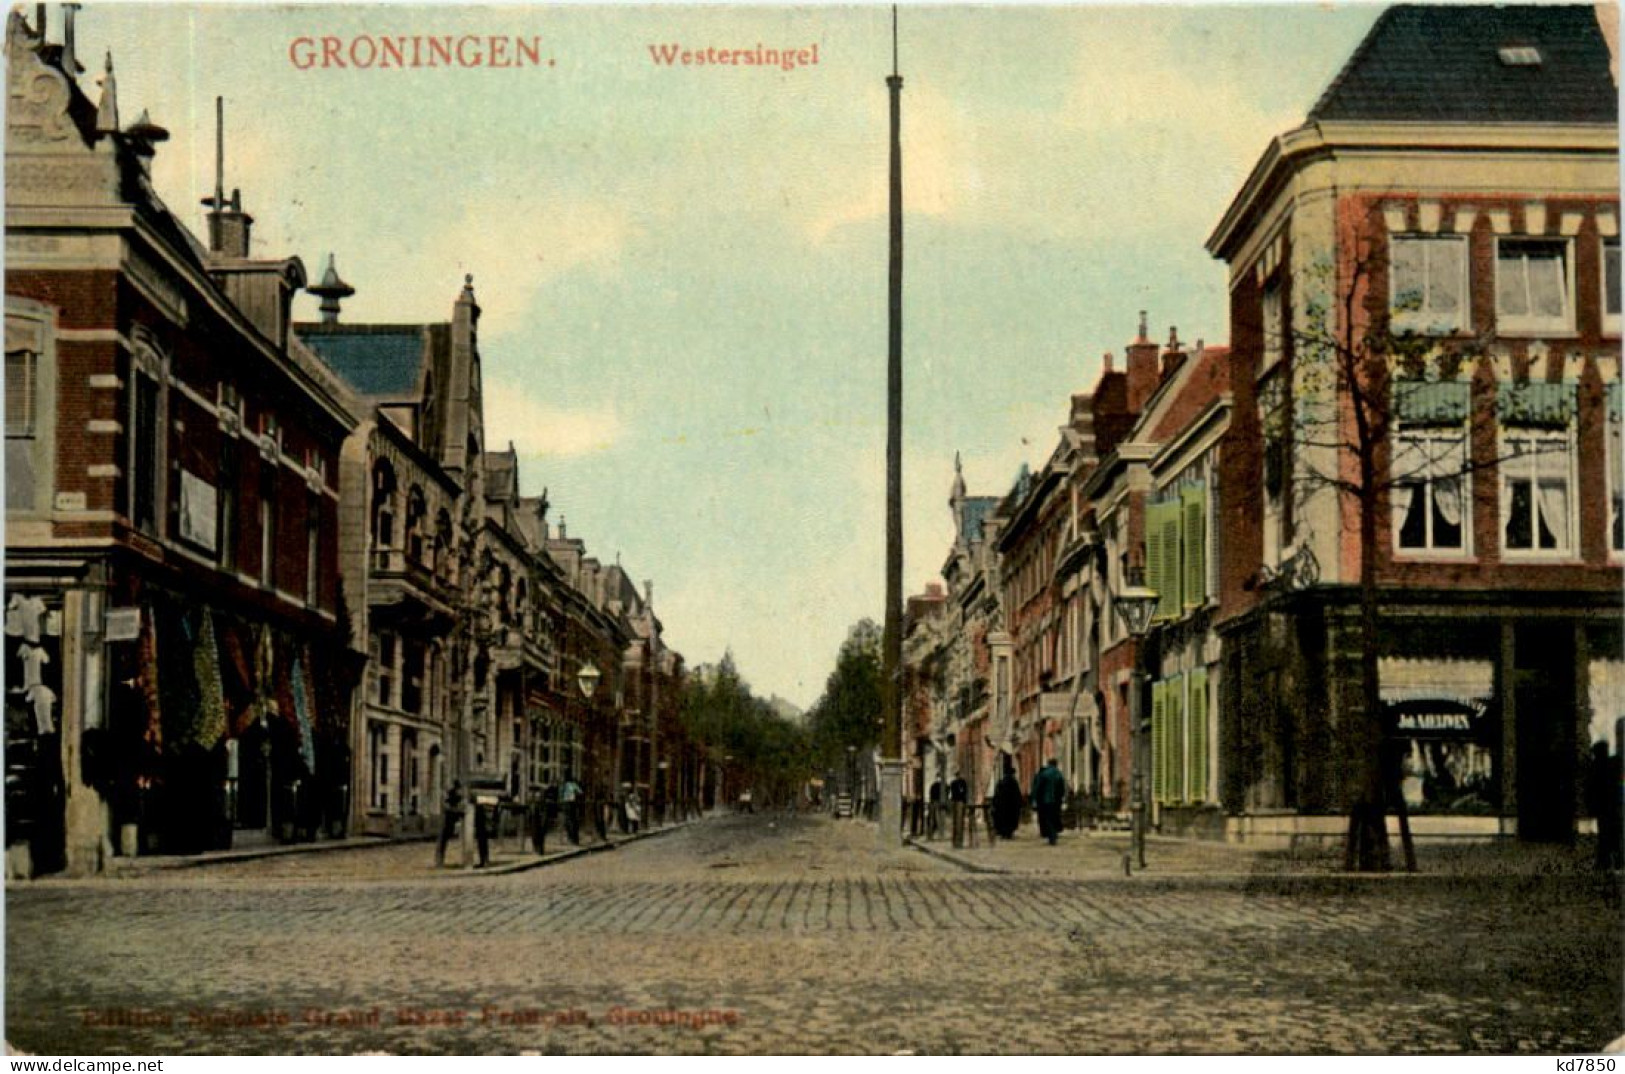 Groningen - Westersingel - Groningen